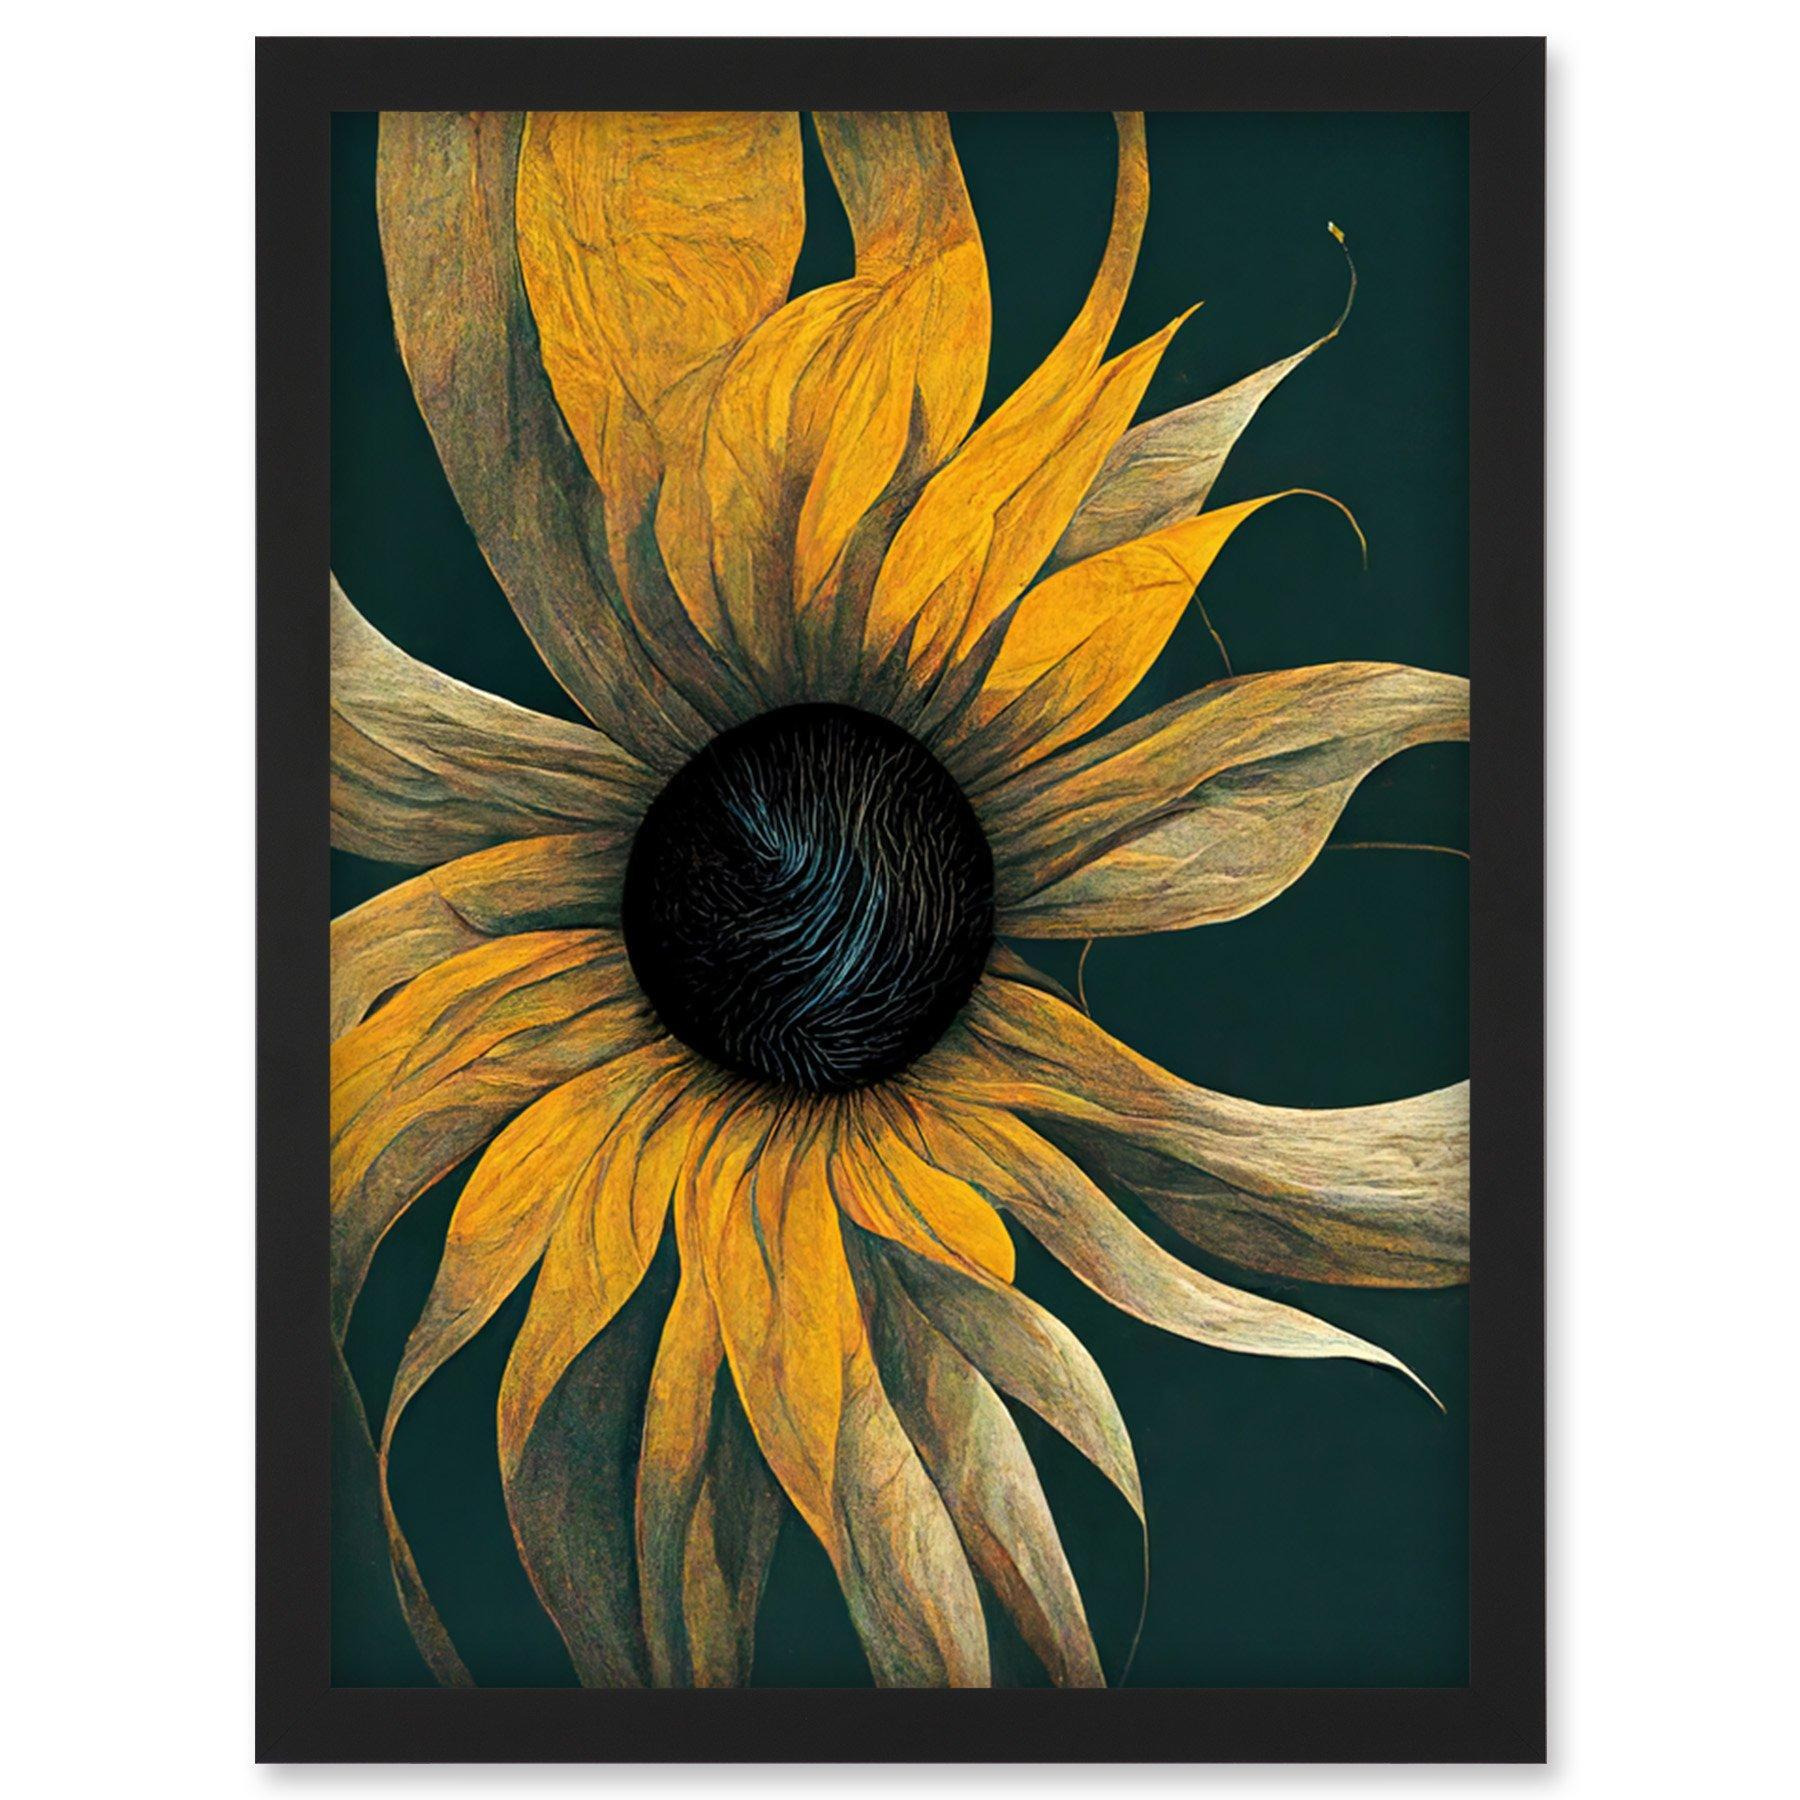 Abstract Modern Sunflower Black Yellow Artwork Framed Wall Art Print A4 - image 1